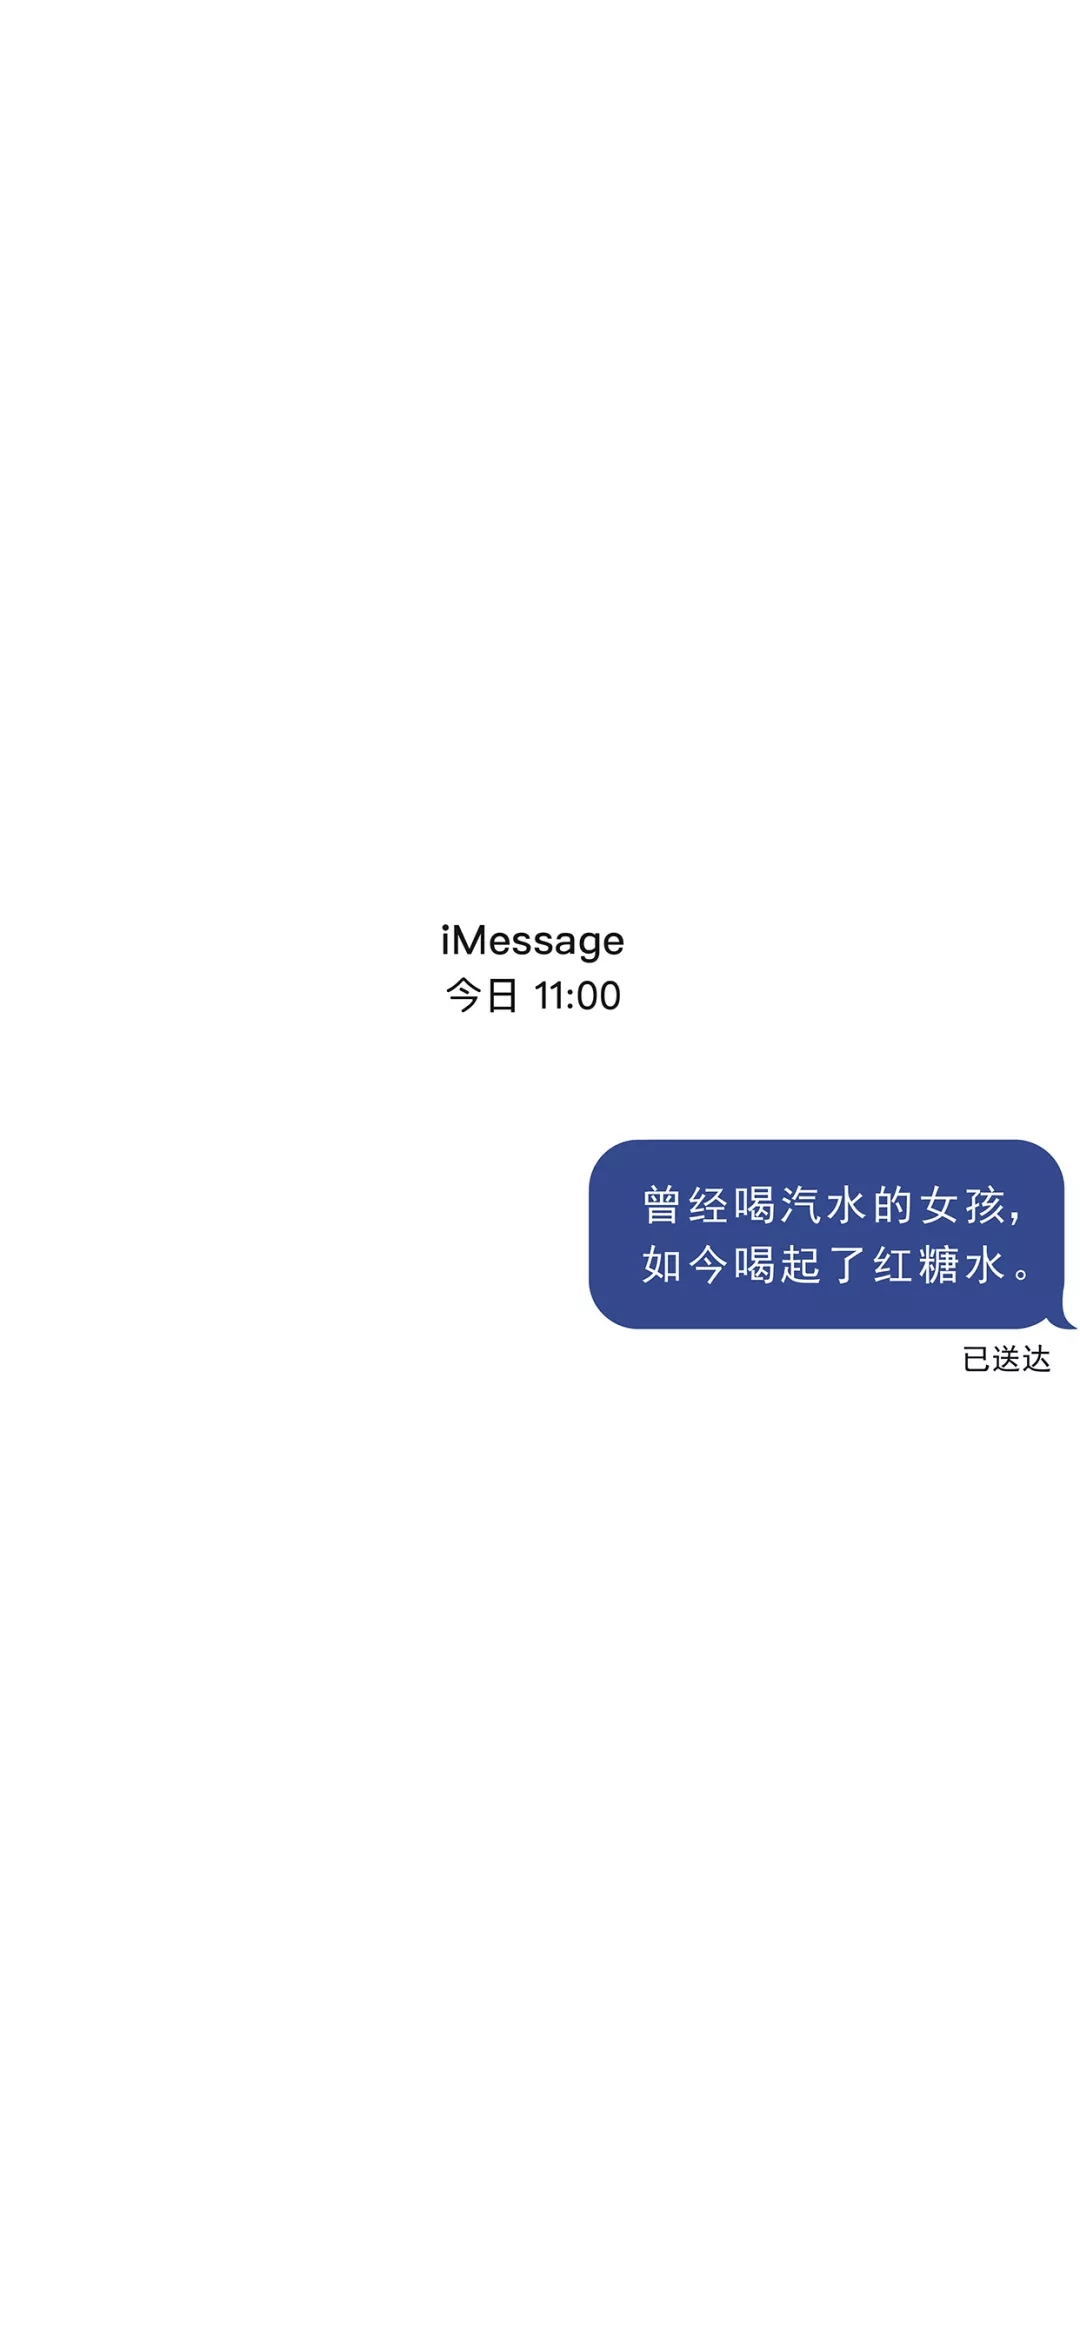 抖音最近超火文字短信壁纸,iMessage短信文字手机壁纸